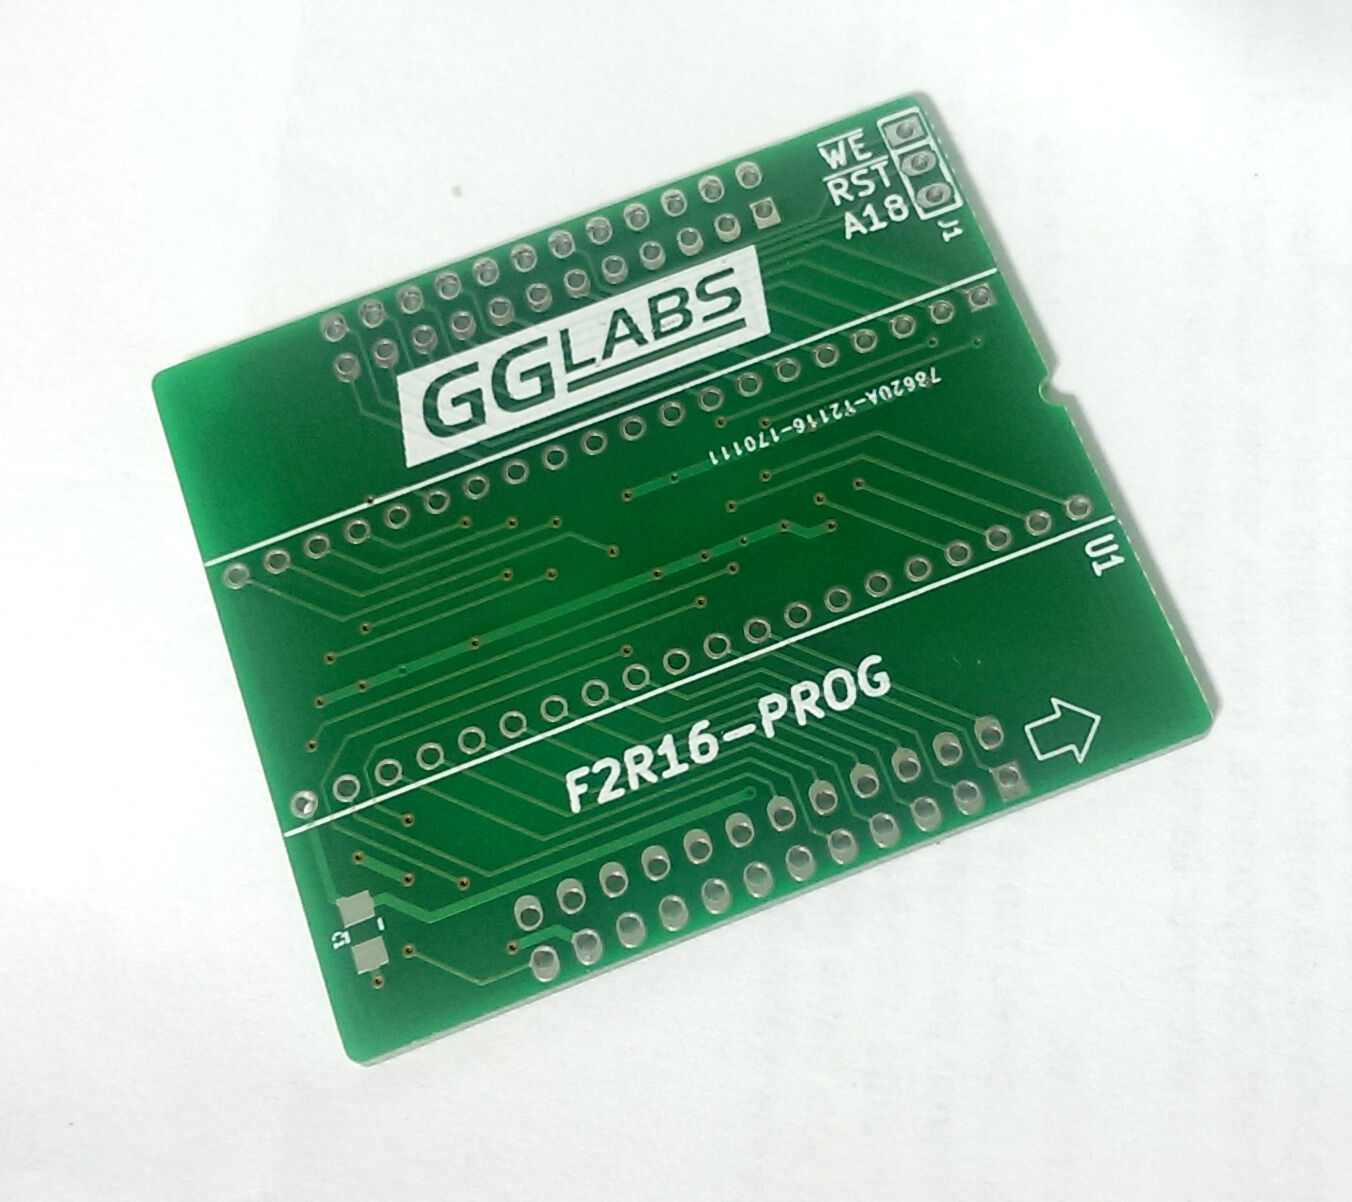 GGLABS F2R16-PROG-A01 PCB - Read/Write GGLABS F2R16 ROM emulator - TL866 Amiga